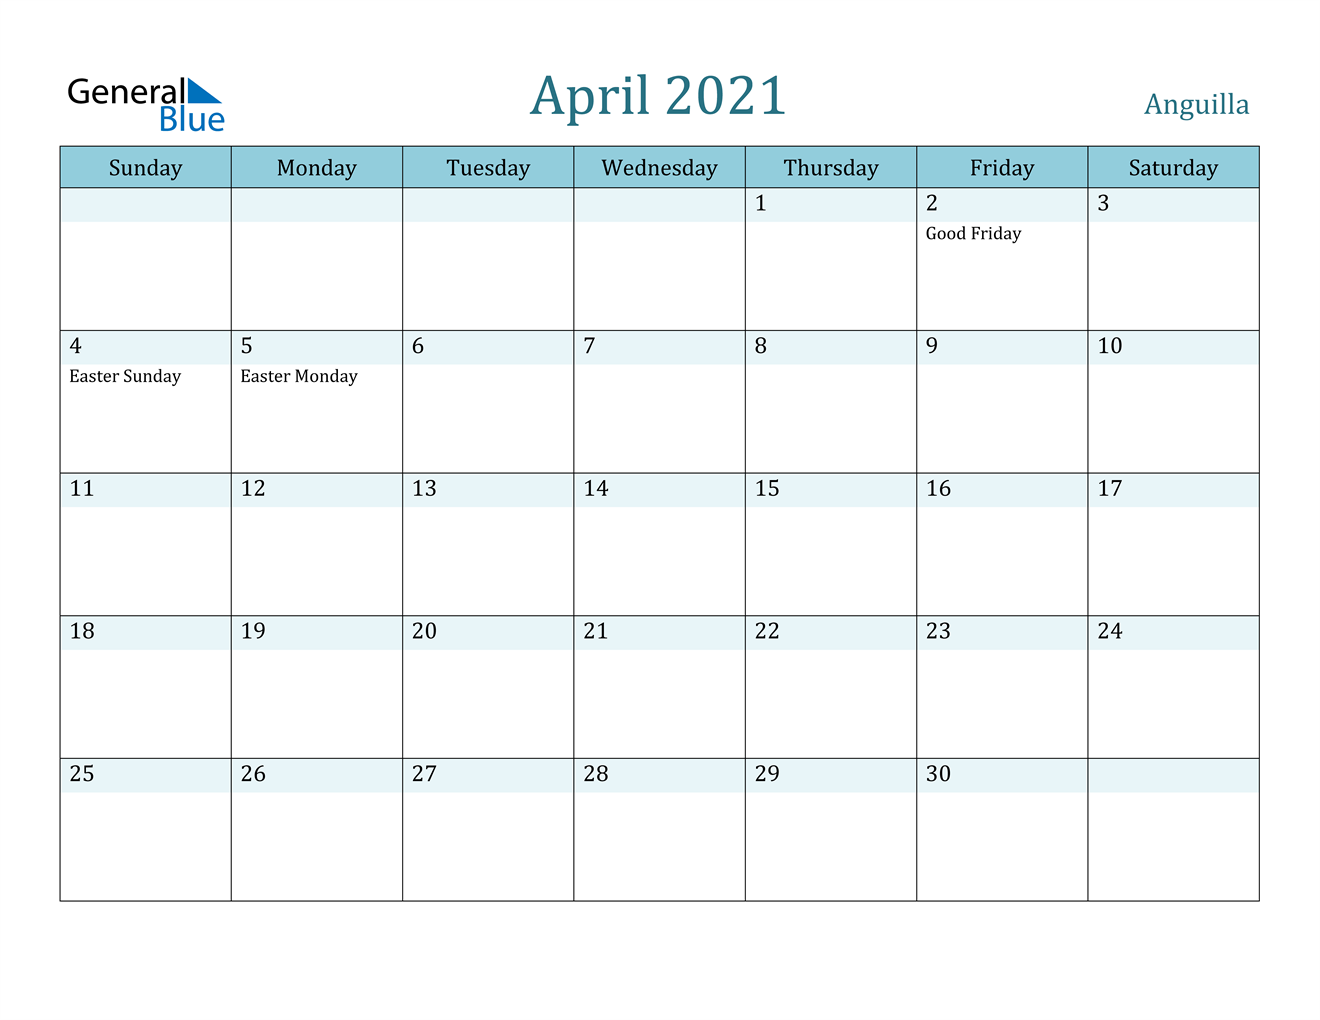 April 2021 Calendar - Anguilla